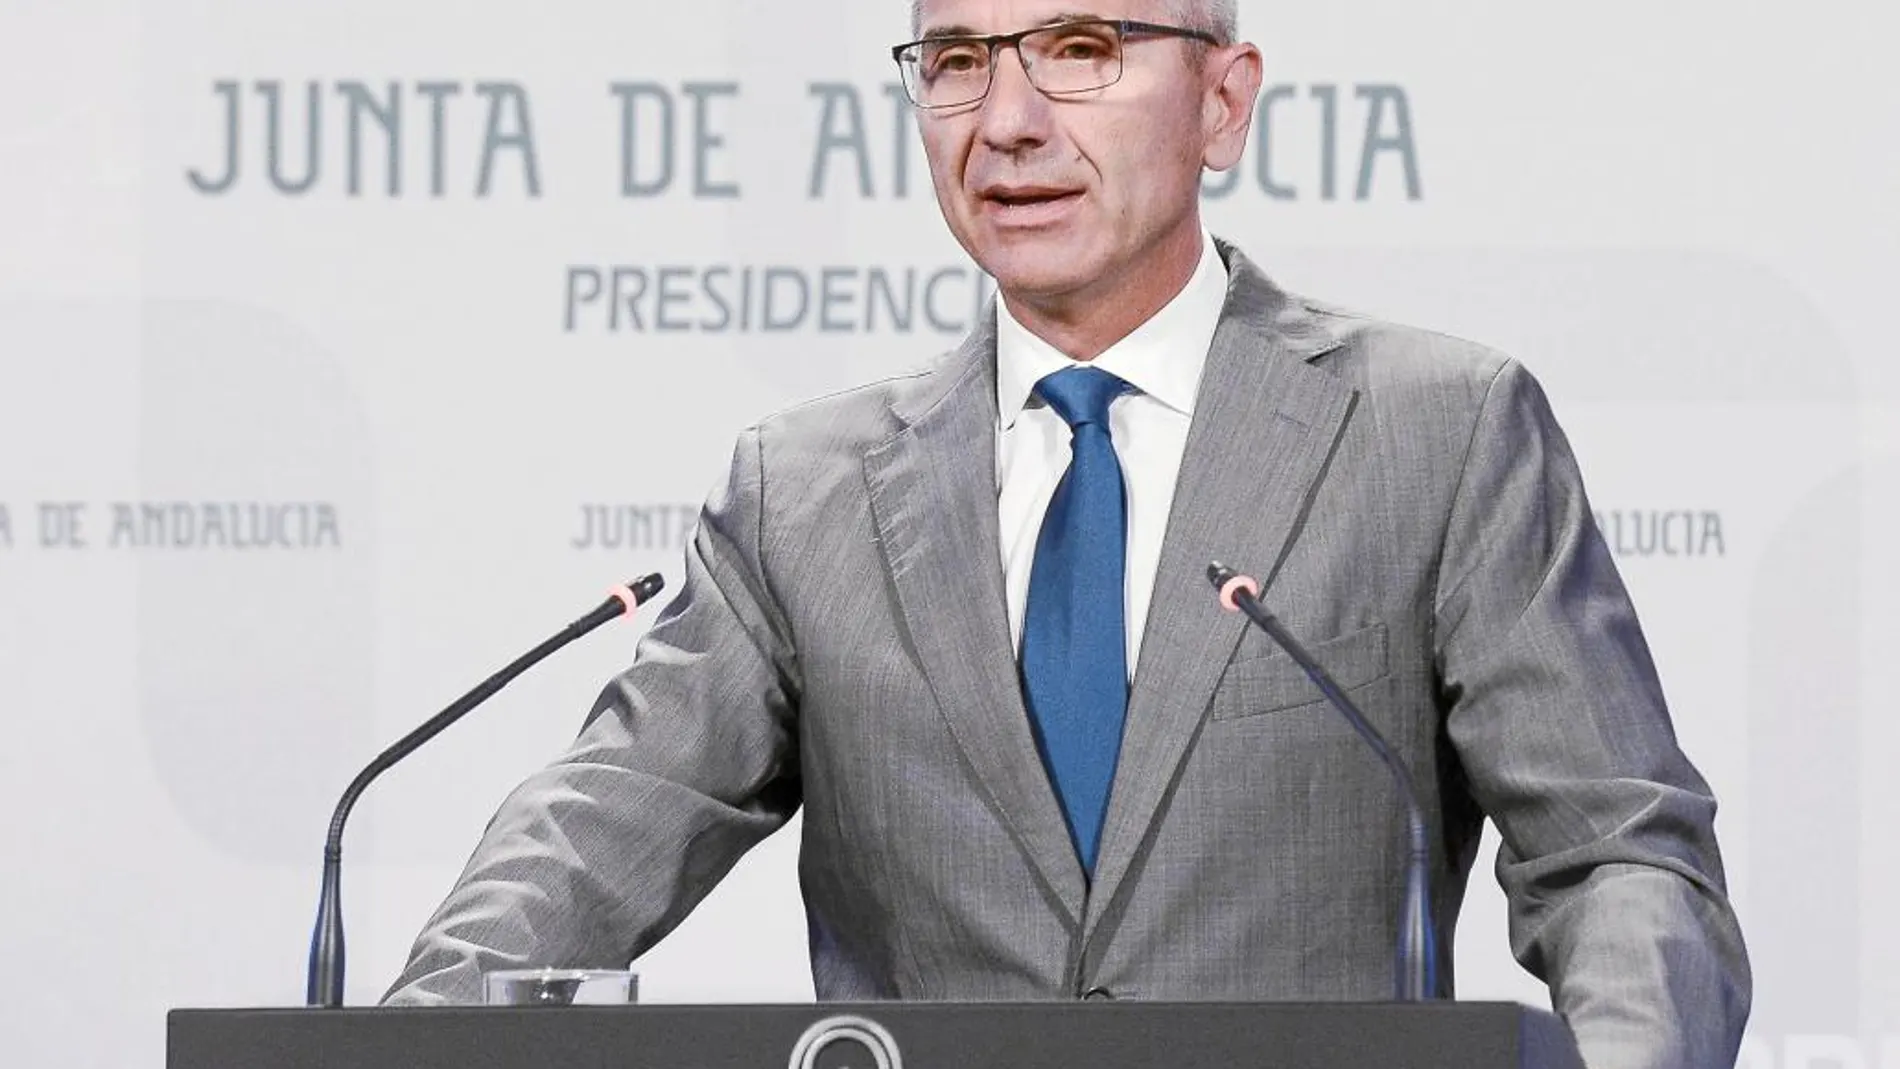 El portavoz del Gobierno regional, Miguel Ángel Vázquez